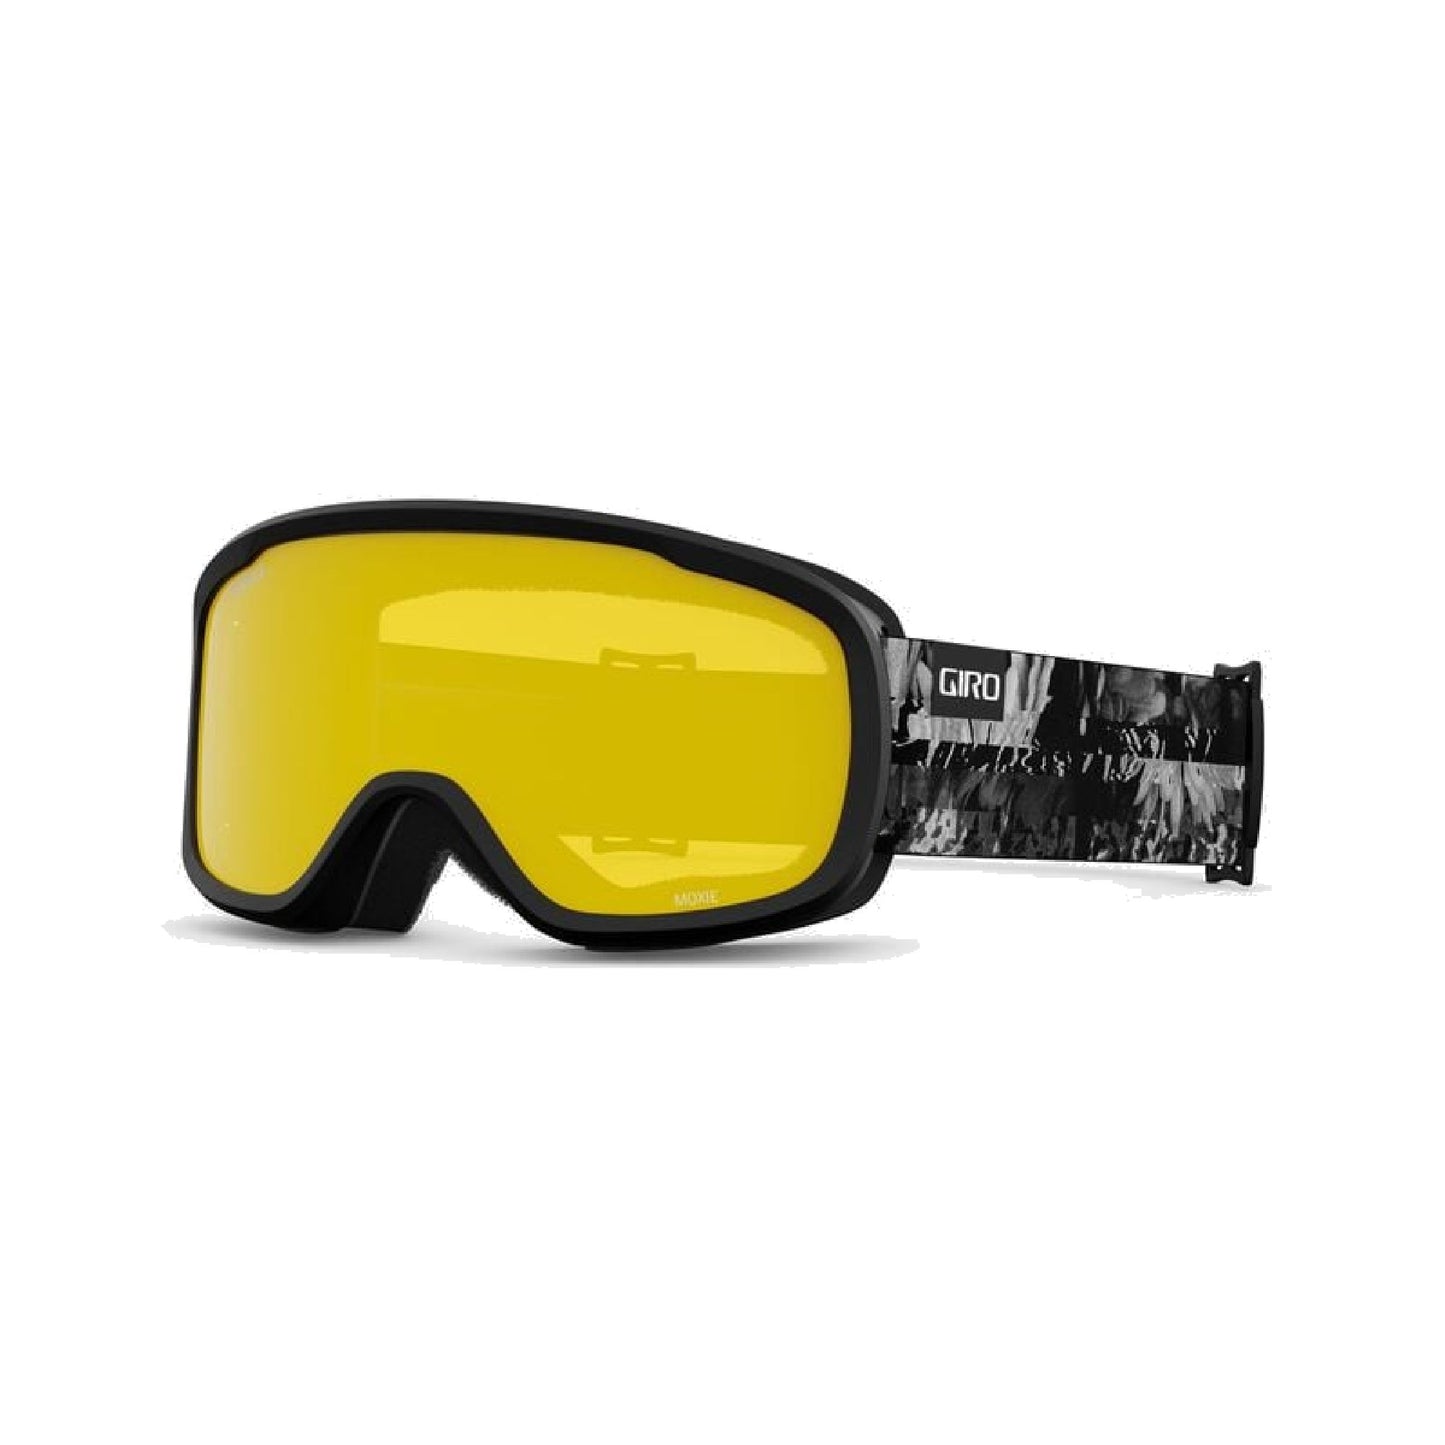 Giro Women's Moxie Snow Goggles Black White Data Mosh Grey Cobalt Yellow Snow Goggles